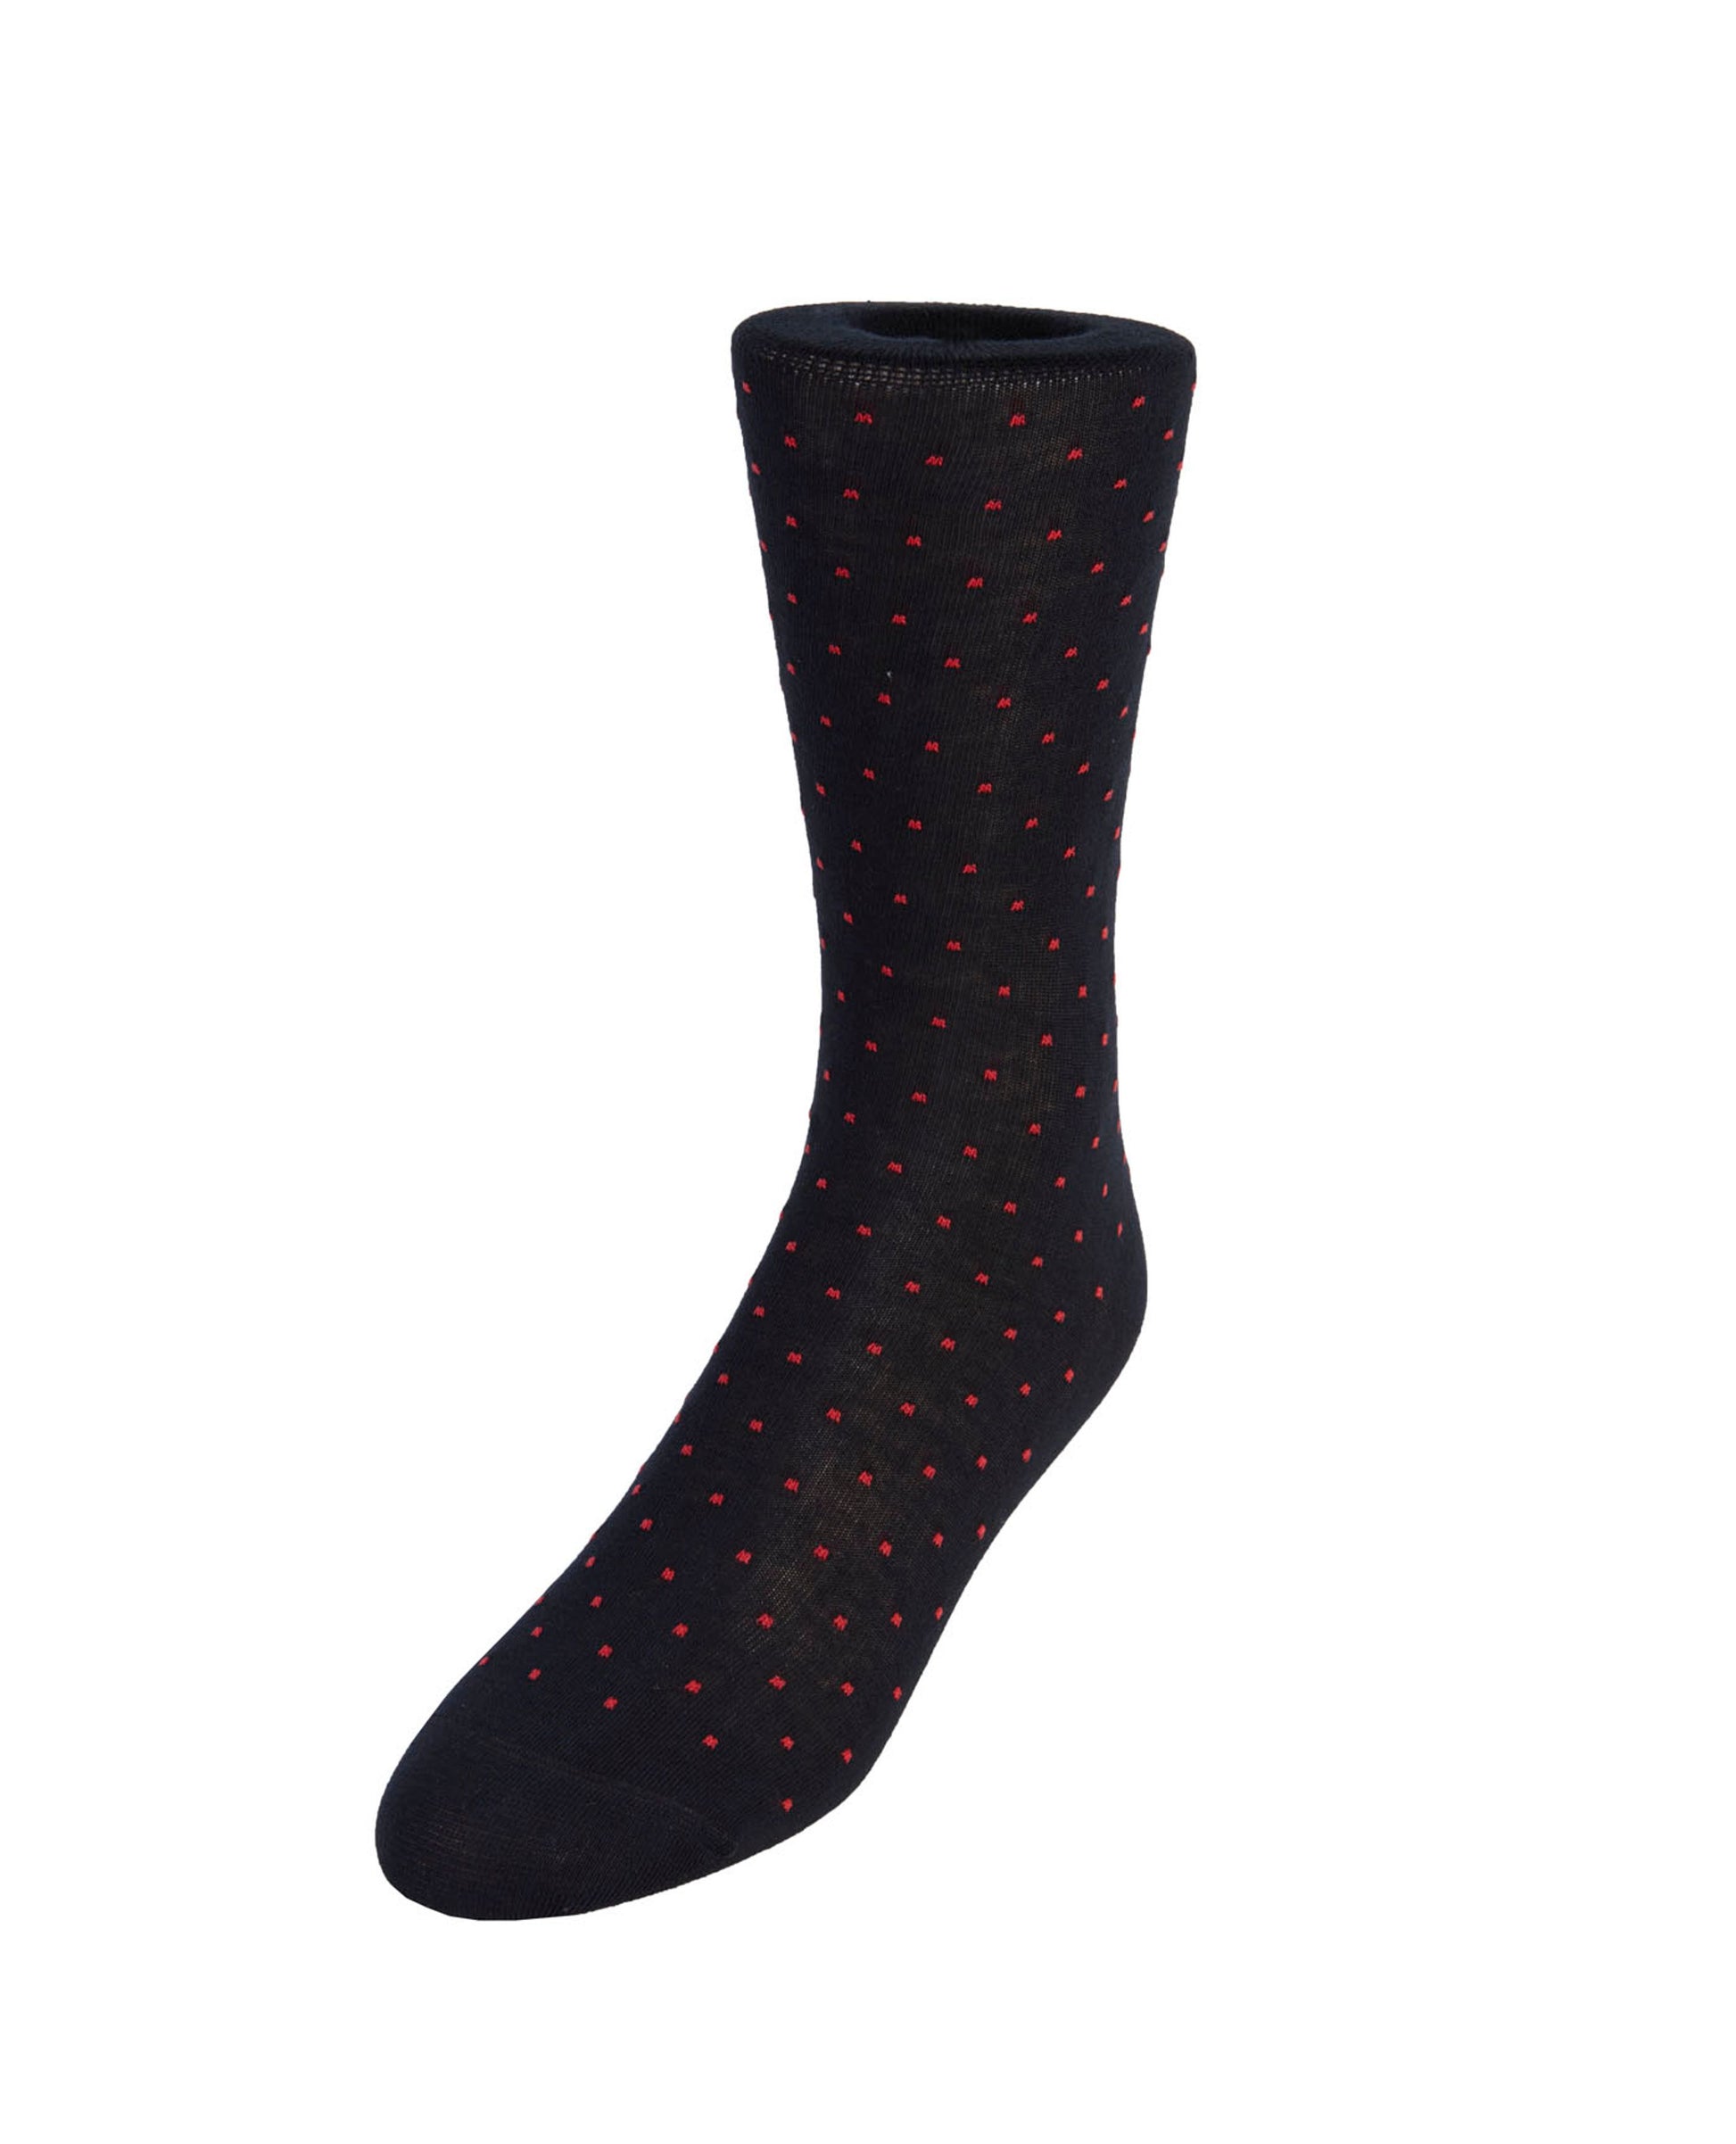 Image 1 of Navy Red Dot Socks